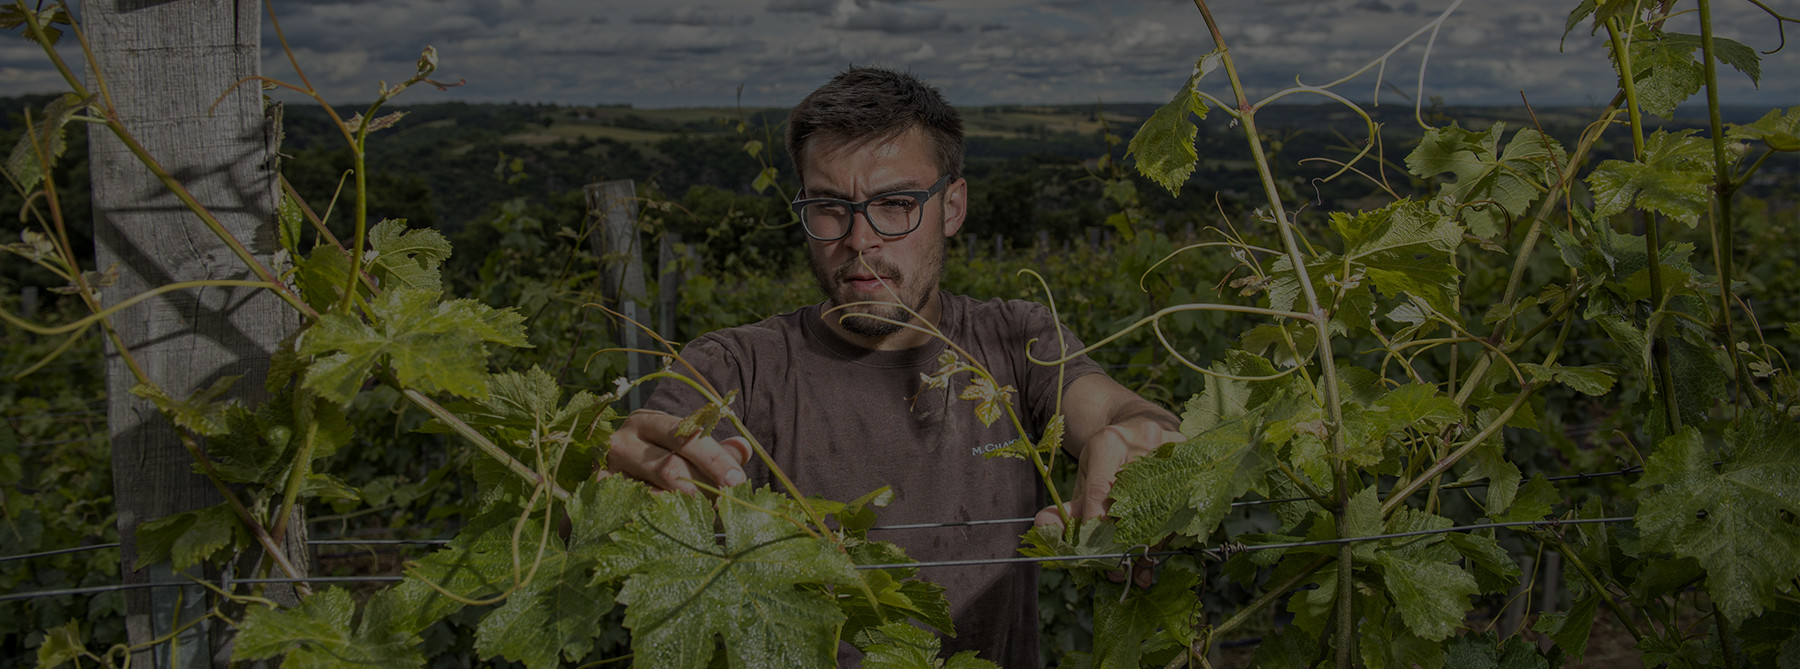 Maxime Chapoutier, au printemps, dans les vignes de Combe Pilate, cultivées en biodynamie.